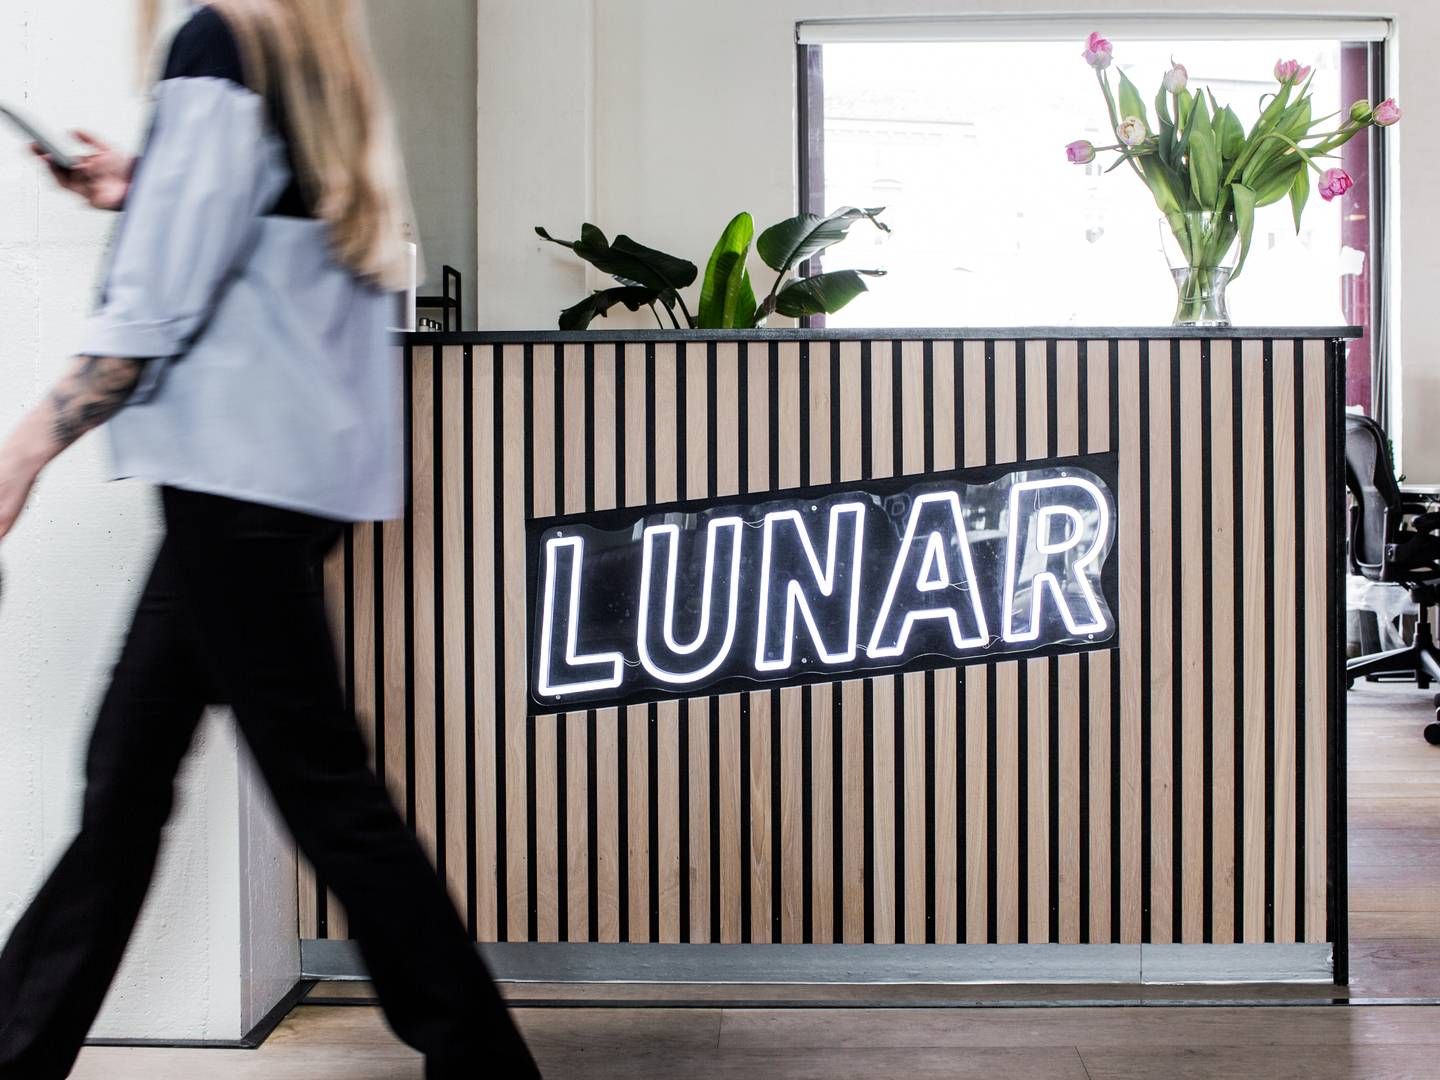 Lunar har afskediget en række ansatte efter organisationsændring. | Foto: PR/Lunar Bank